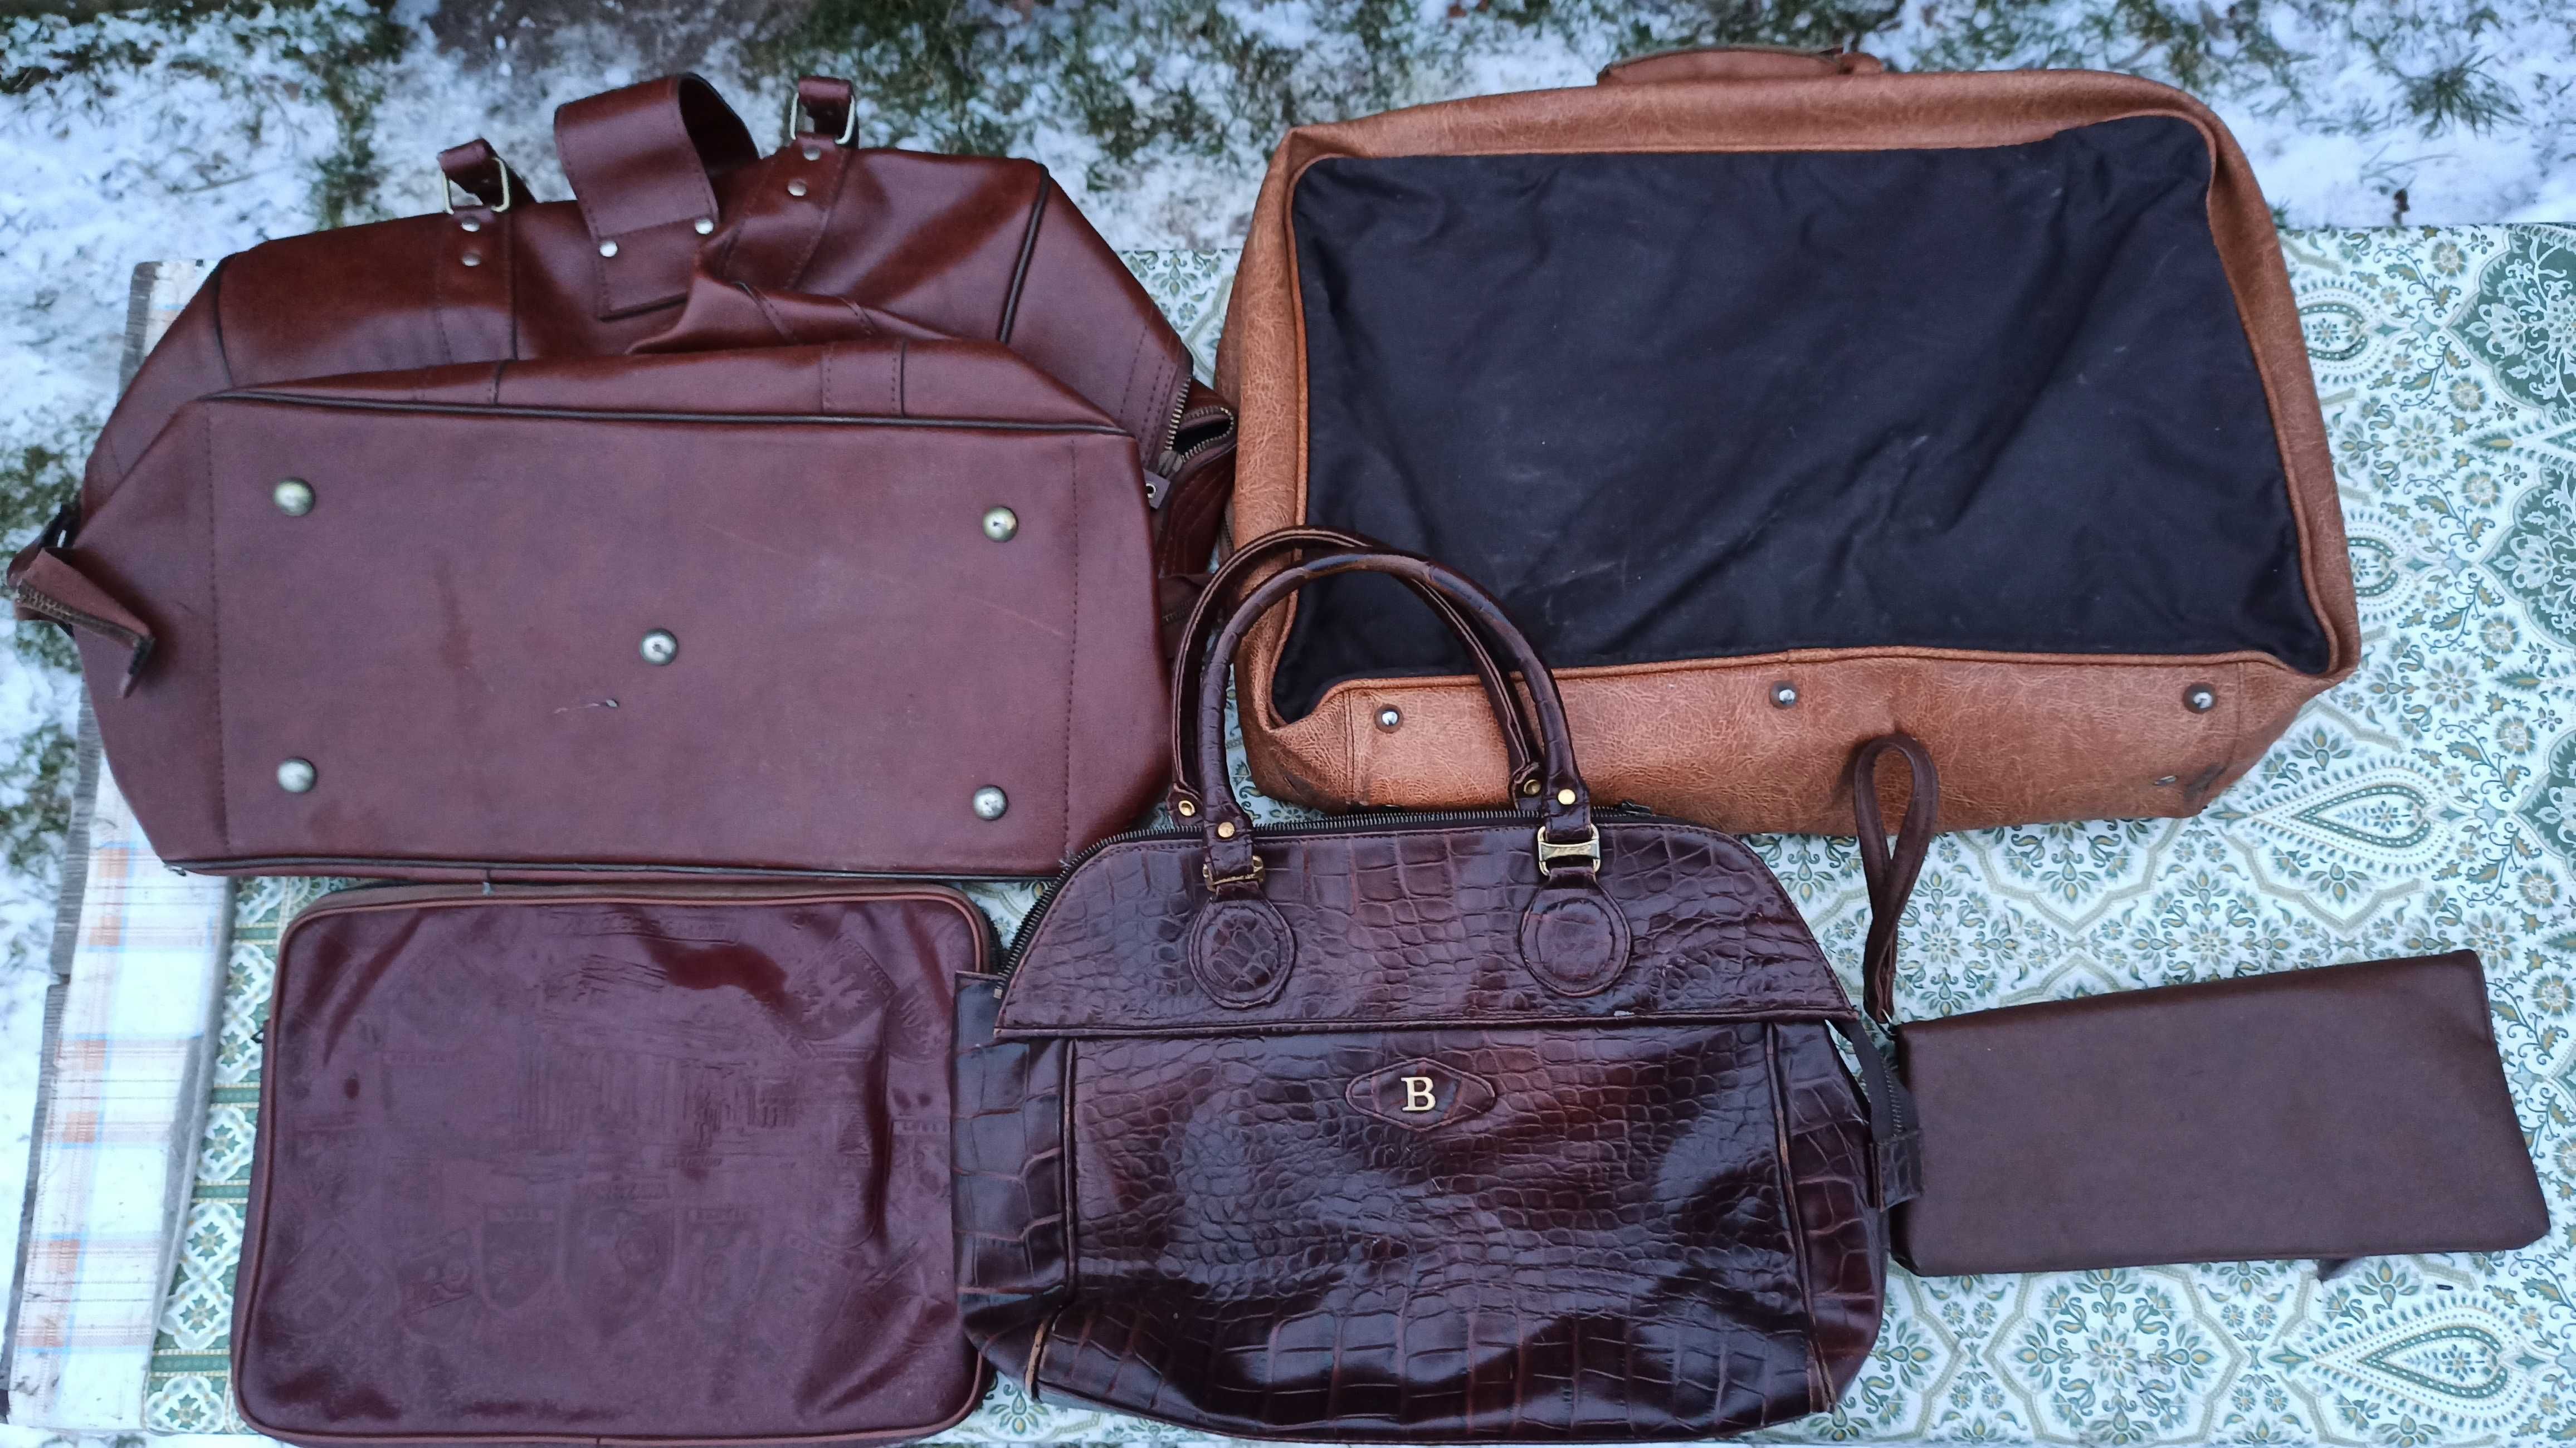 Torebki podręczne i torby podróżne z materiałów skóropodobnych lata 80